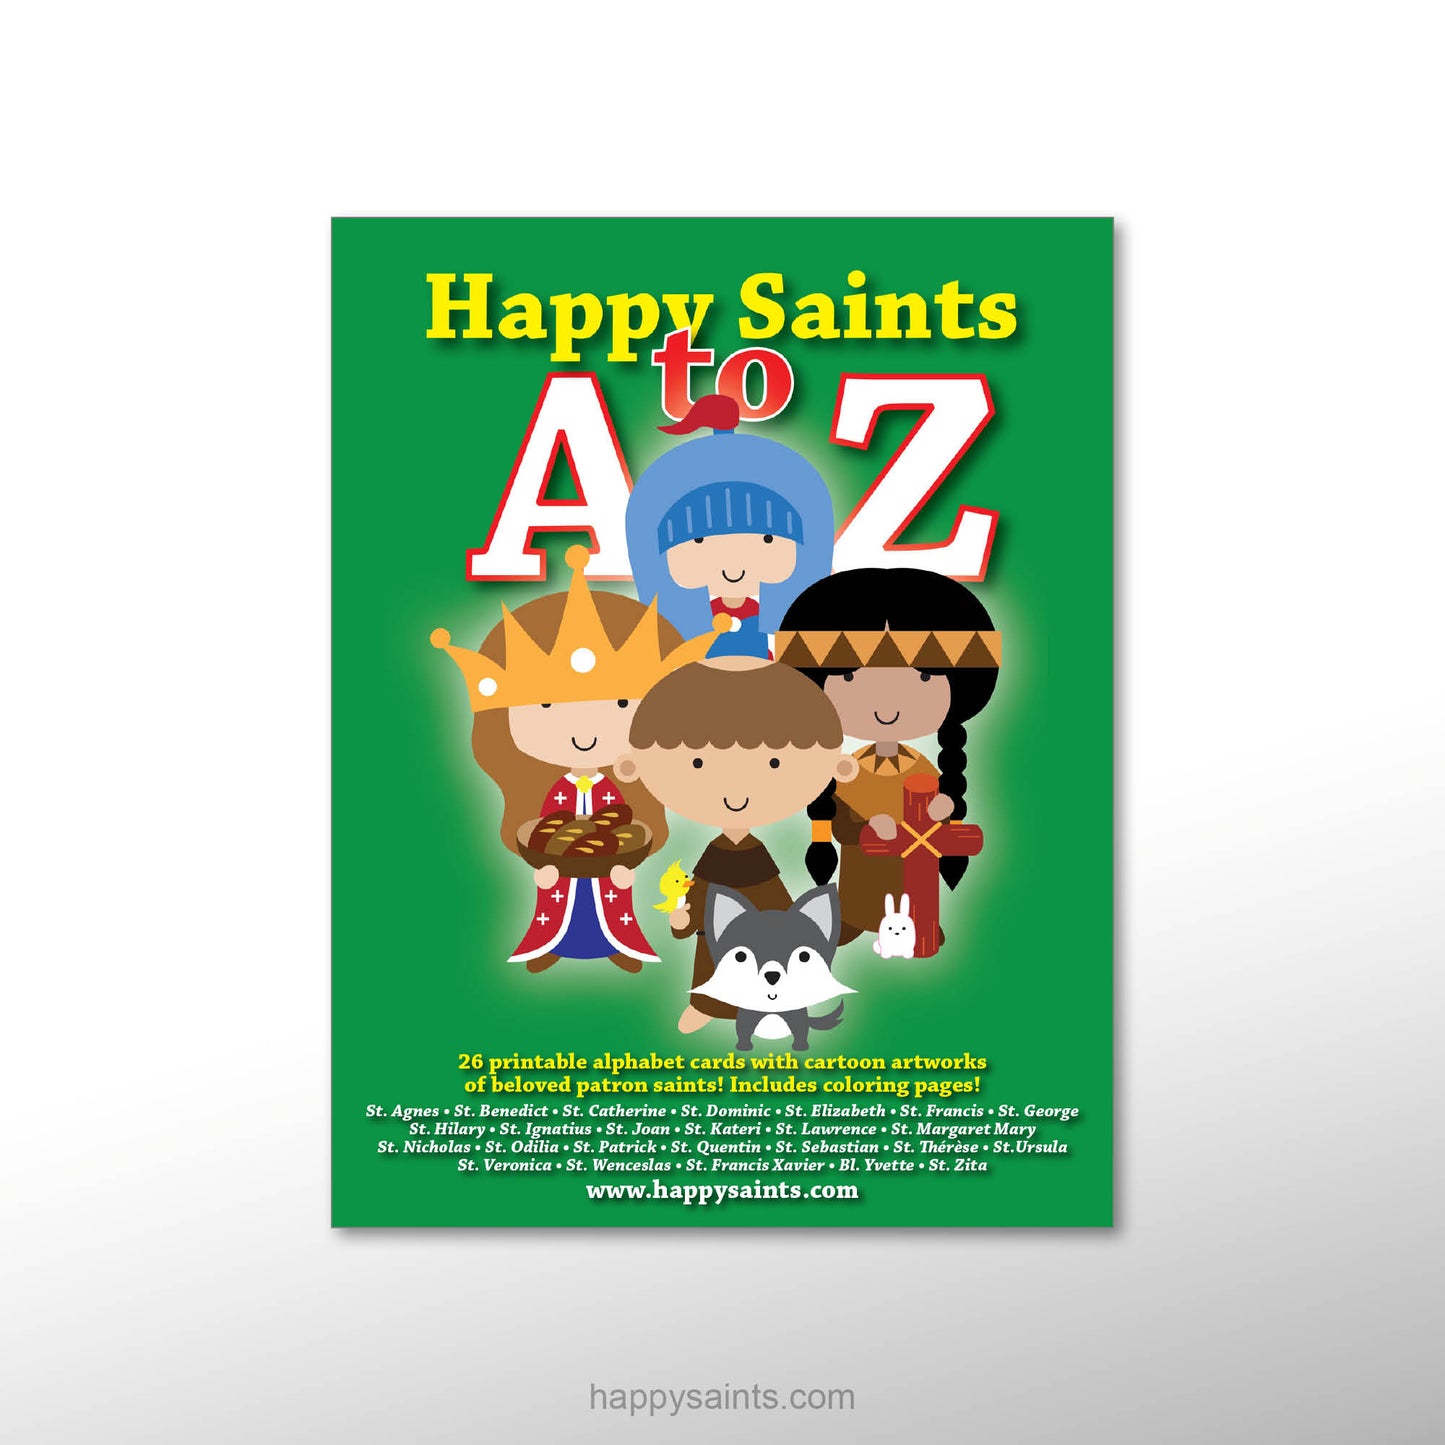 Happy Saints A to Z